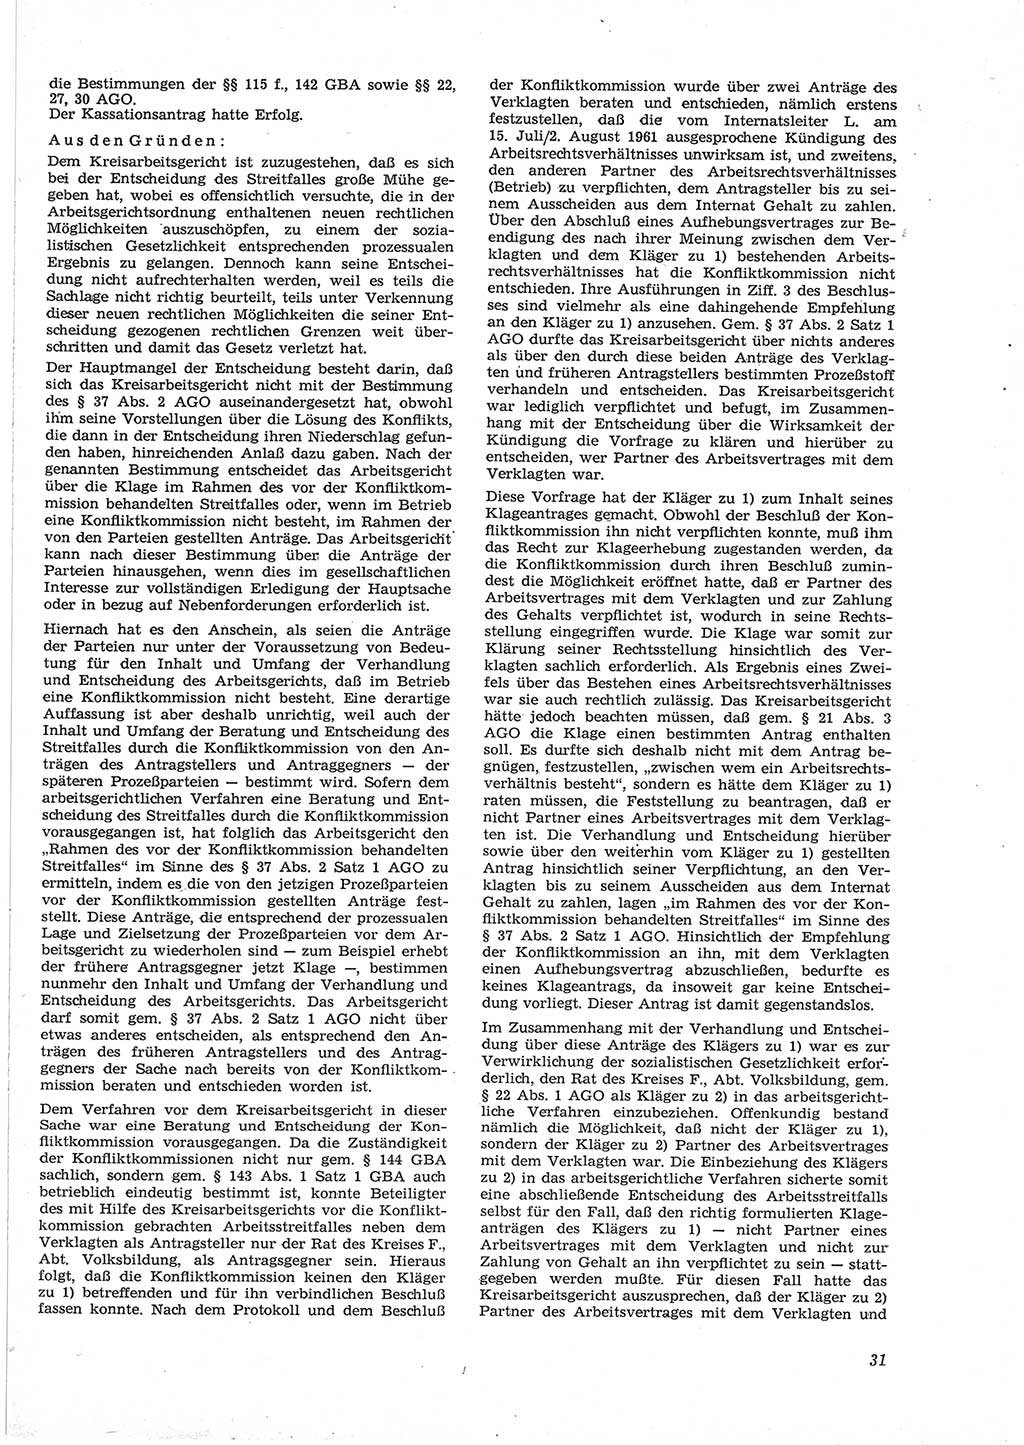 Neue Justiz (NJ), Zeitschrift für Recht und Rechtswissenschaft [Deutsche Demokratische Republik (DDR)], 17. Jahrgang 1963, Seite 31 (NJ DDR 1963, S. 31)